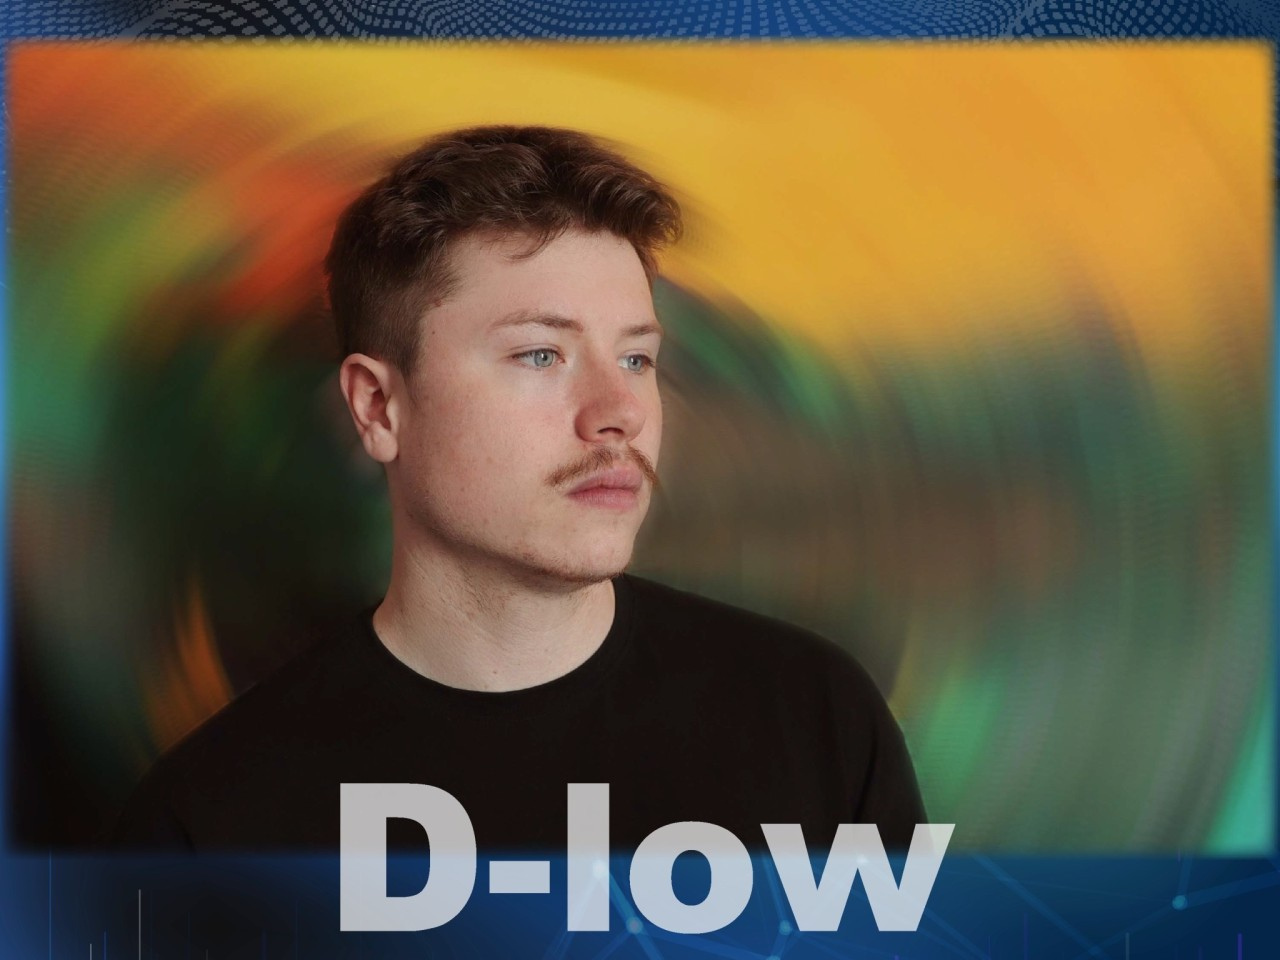 D-low